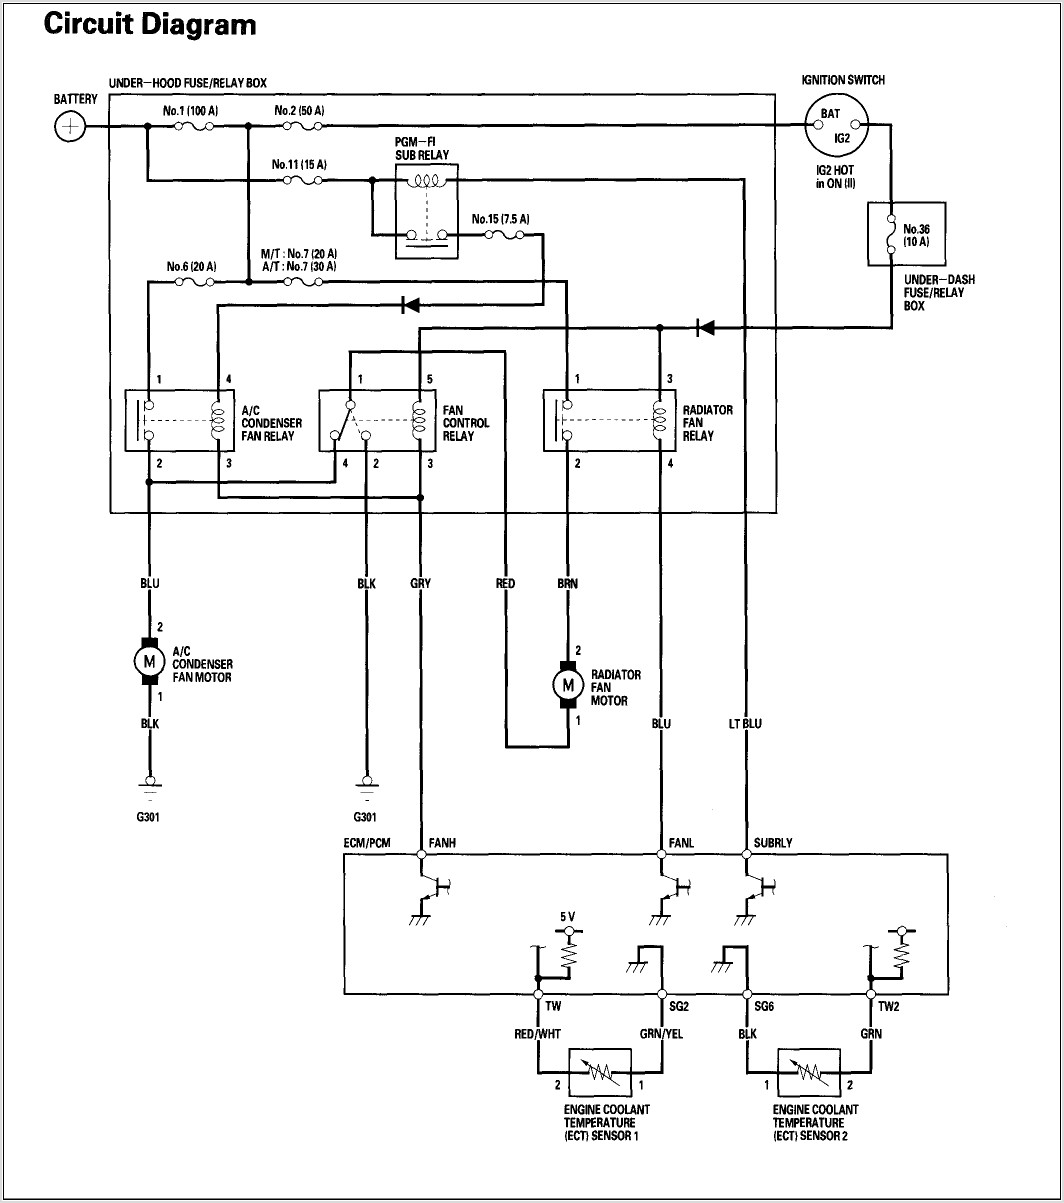 Manual Fan Switch Diagram